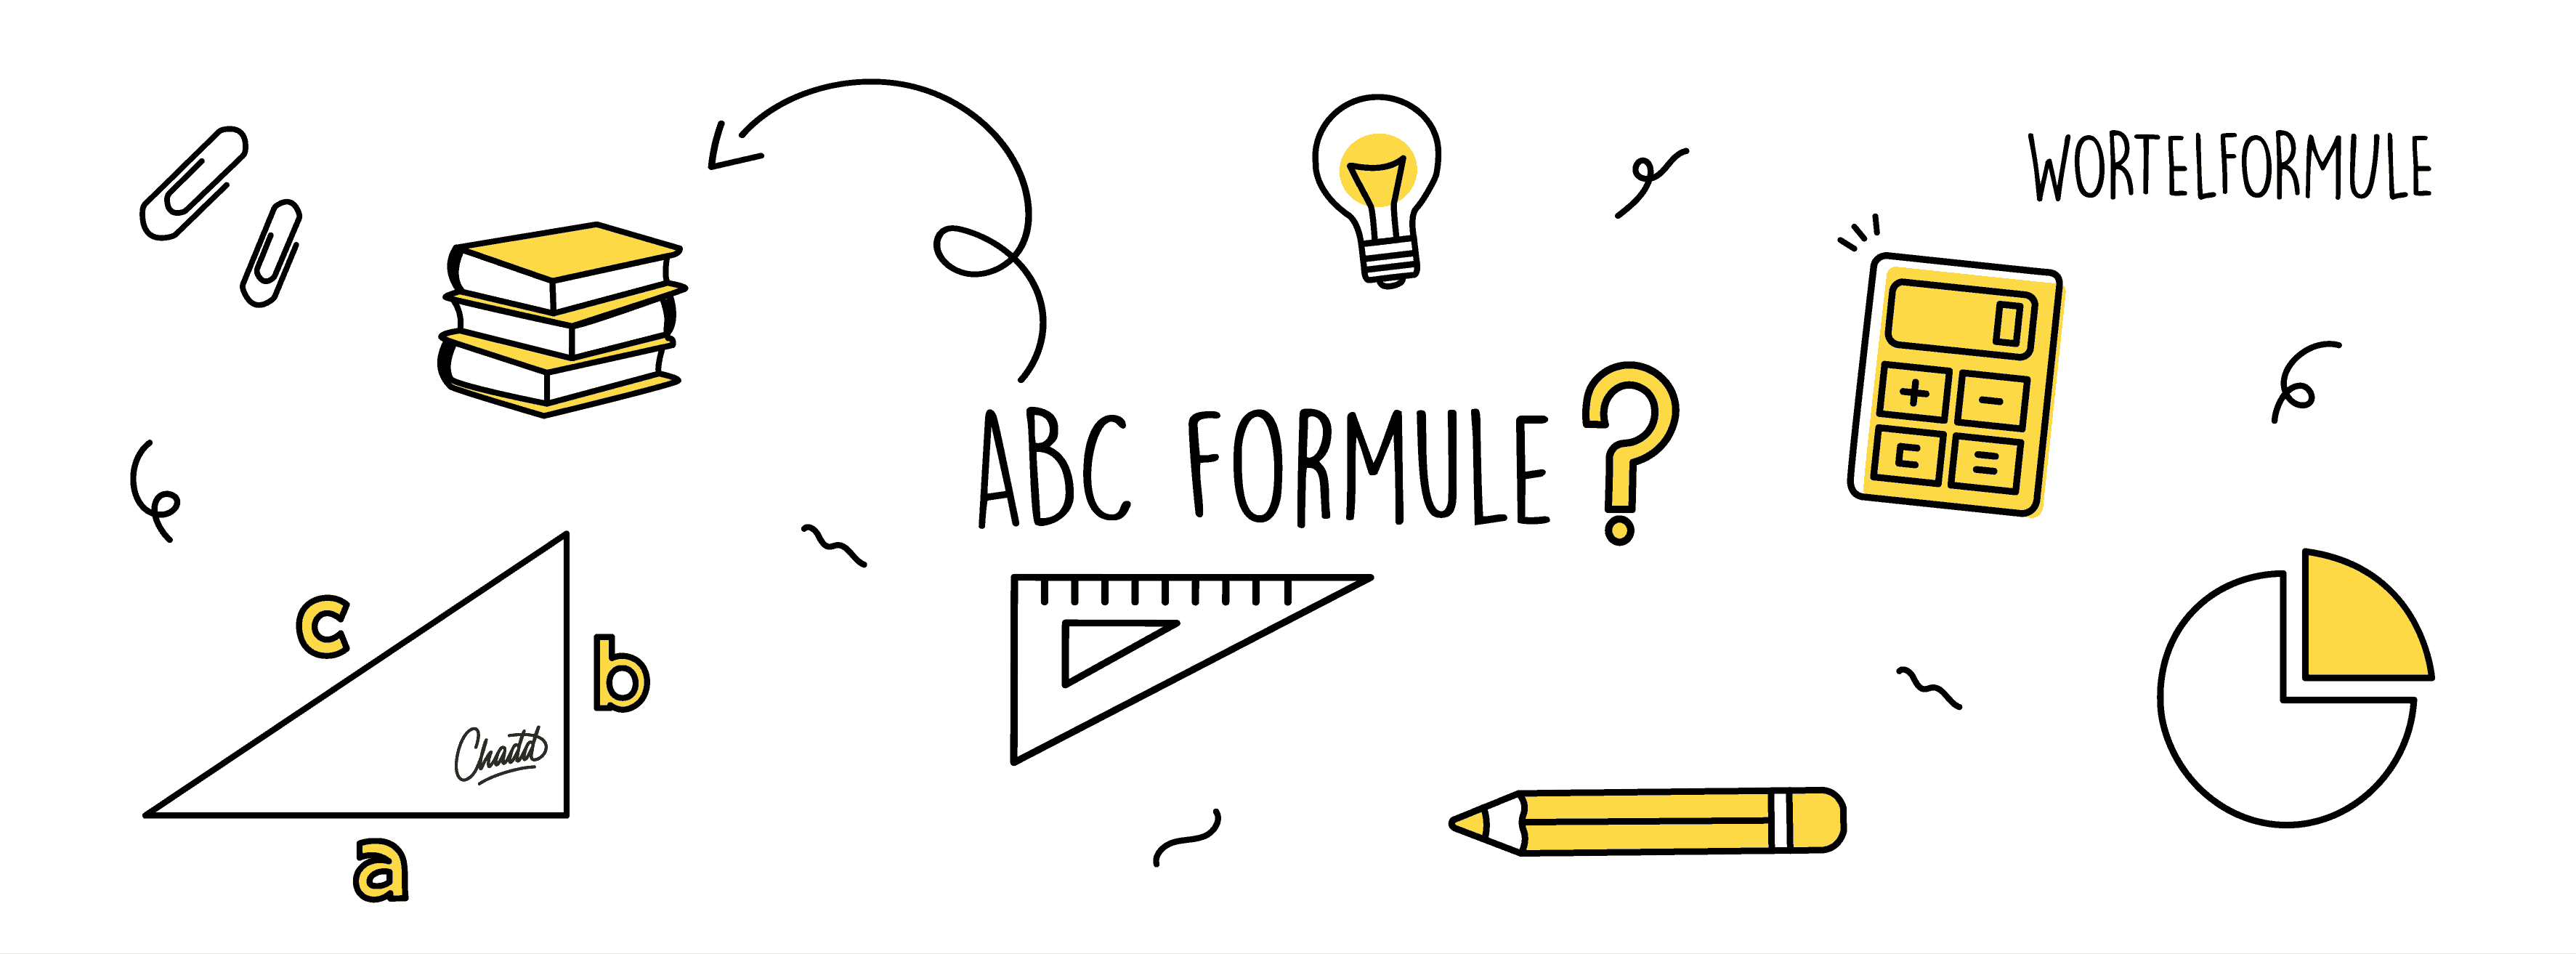 De abc formule